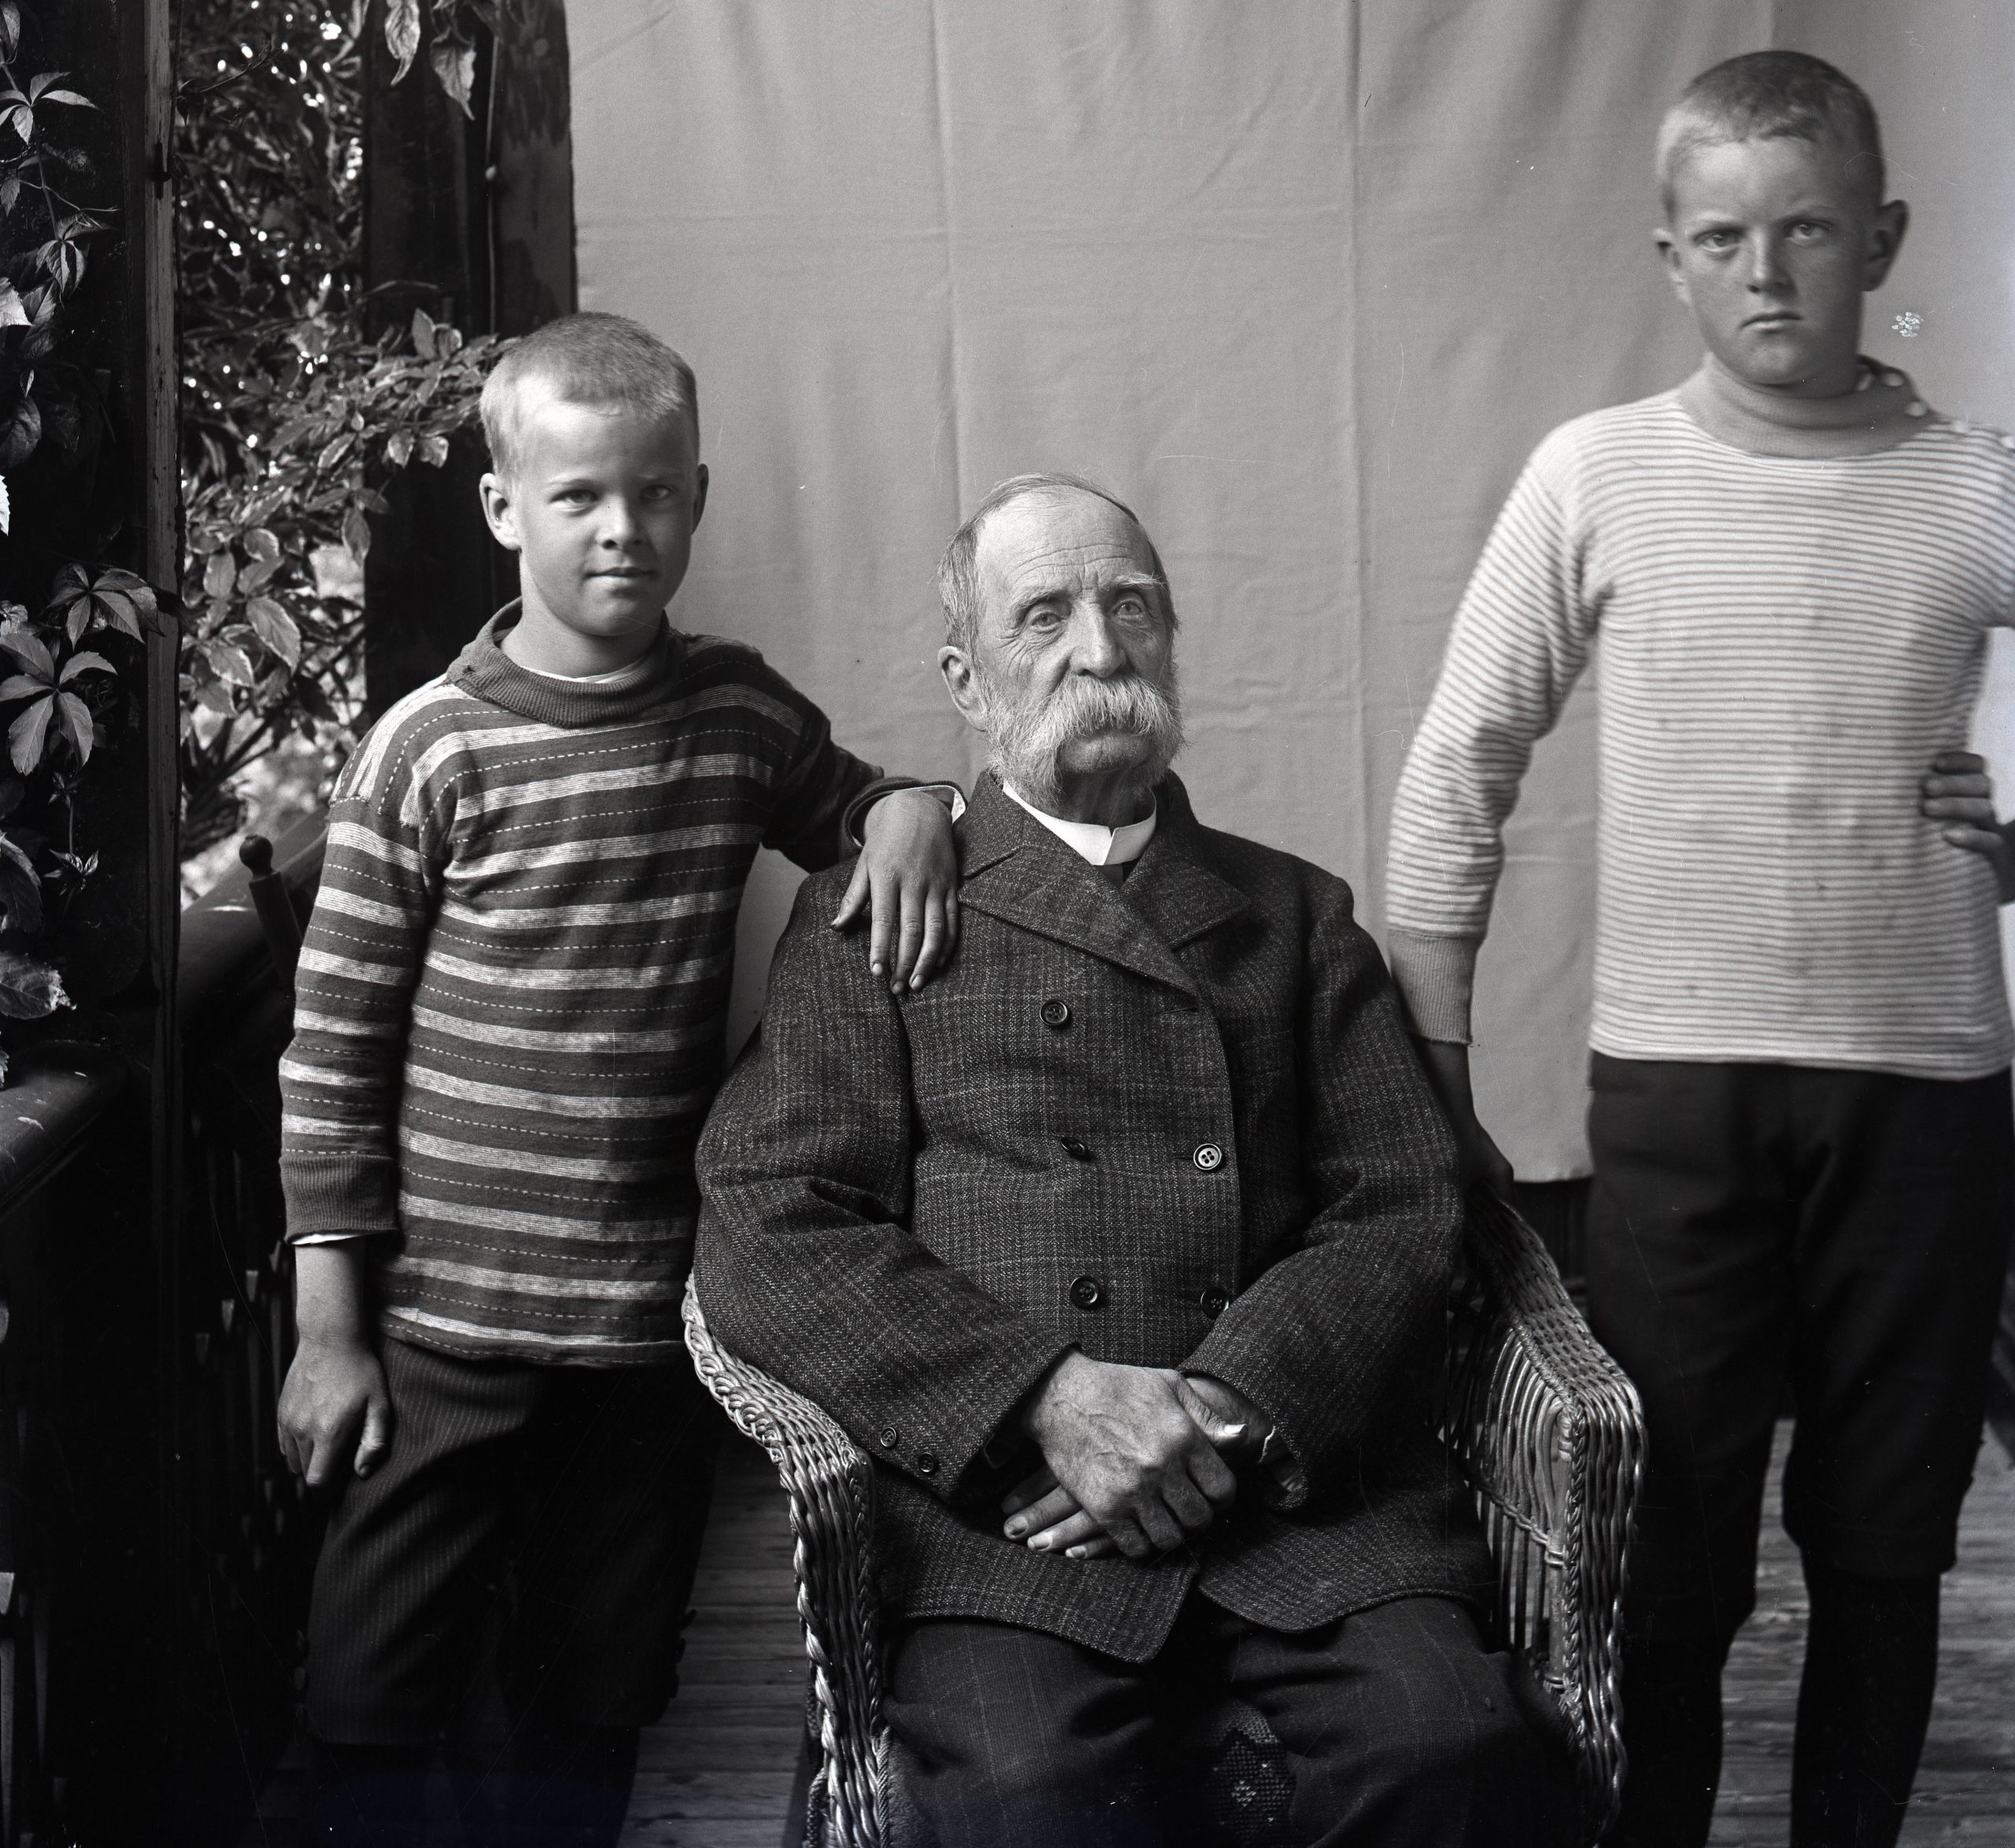 Svartvitt foto. En äldre sittande man med stor mustasch omgiven av två pojkar cirka 7 och 9 år gamla.